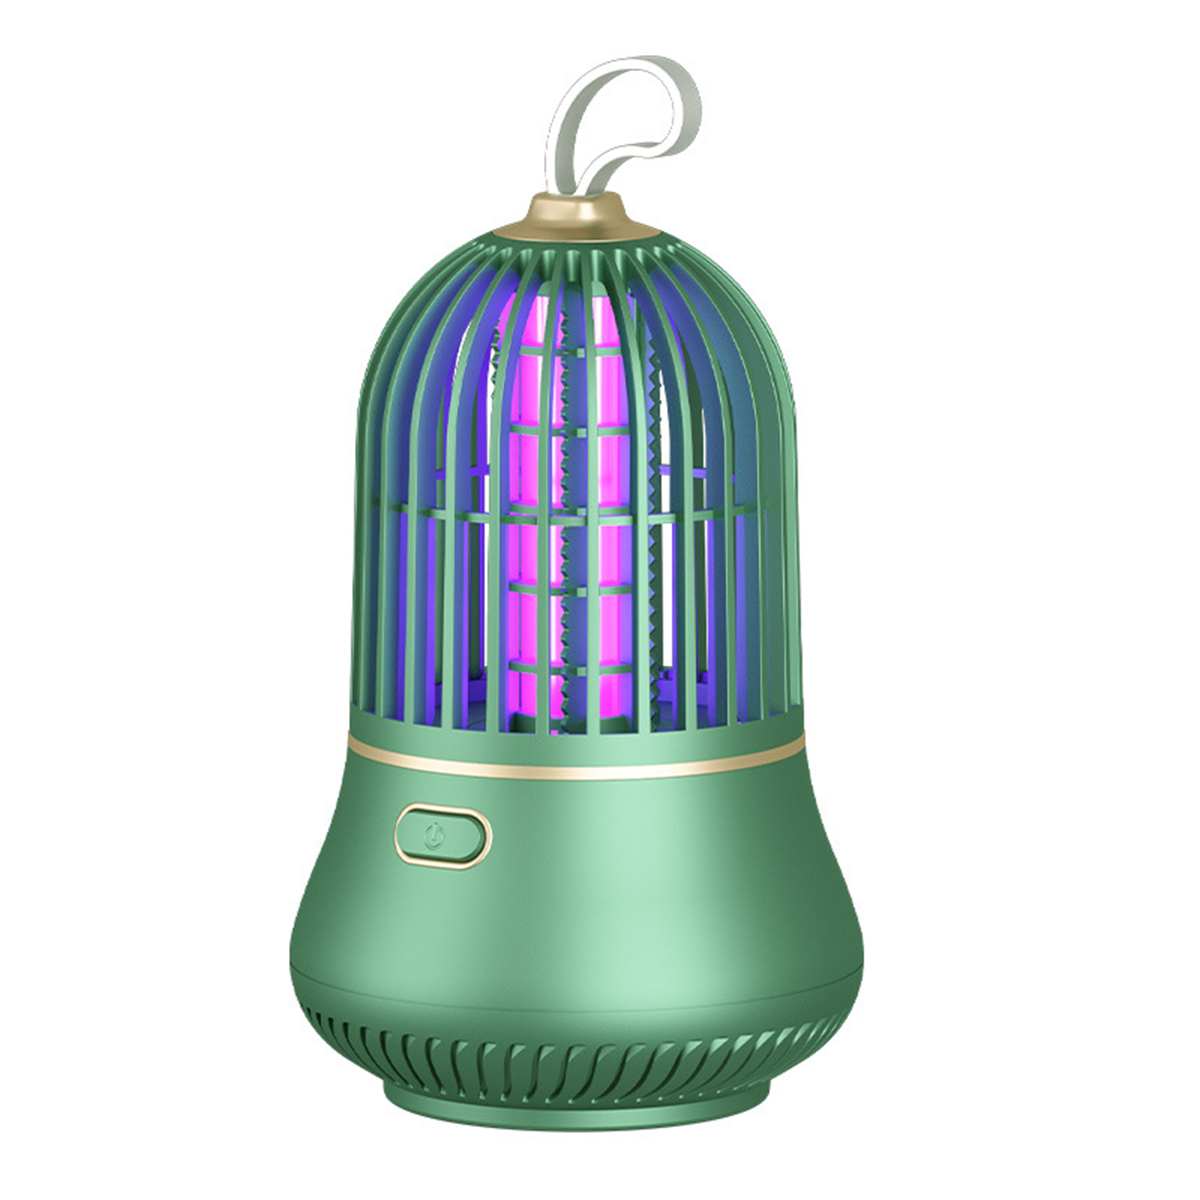 und BRIGHTAKE Lampe Schädlingsbekämpfung Killer effektive Insektenvernichter für USB-LED leise Moskito